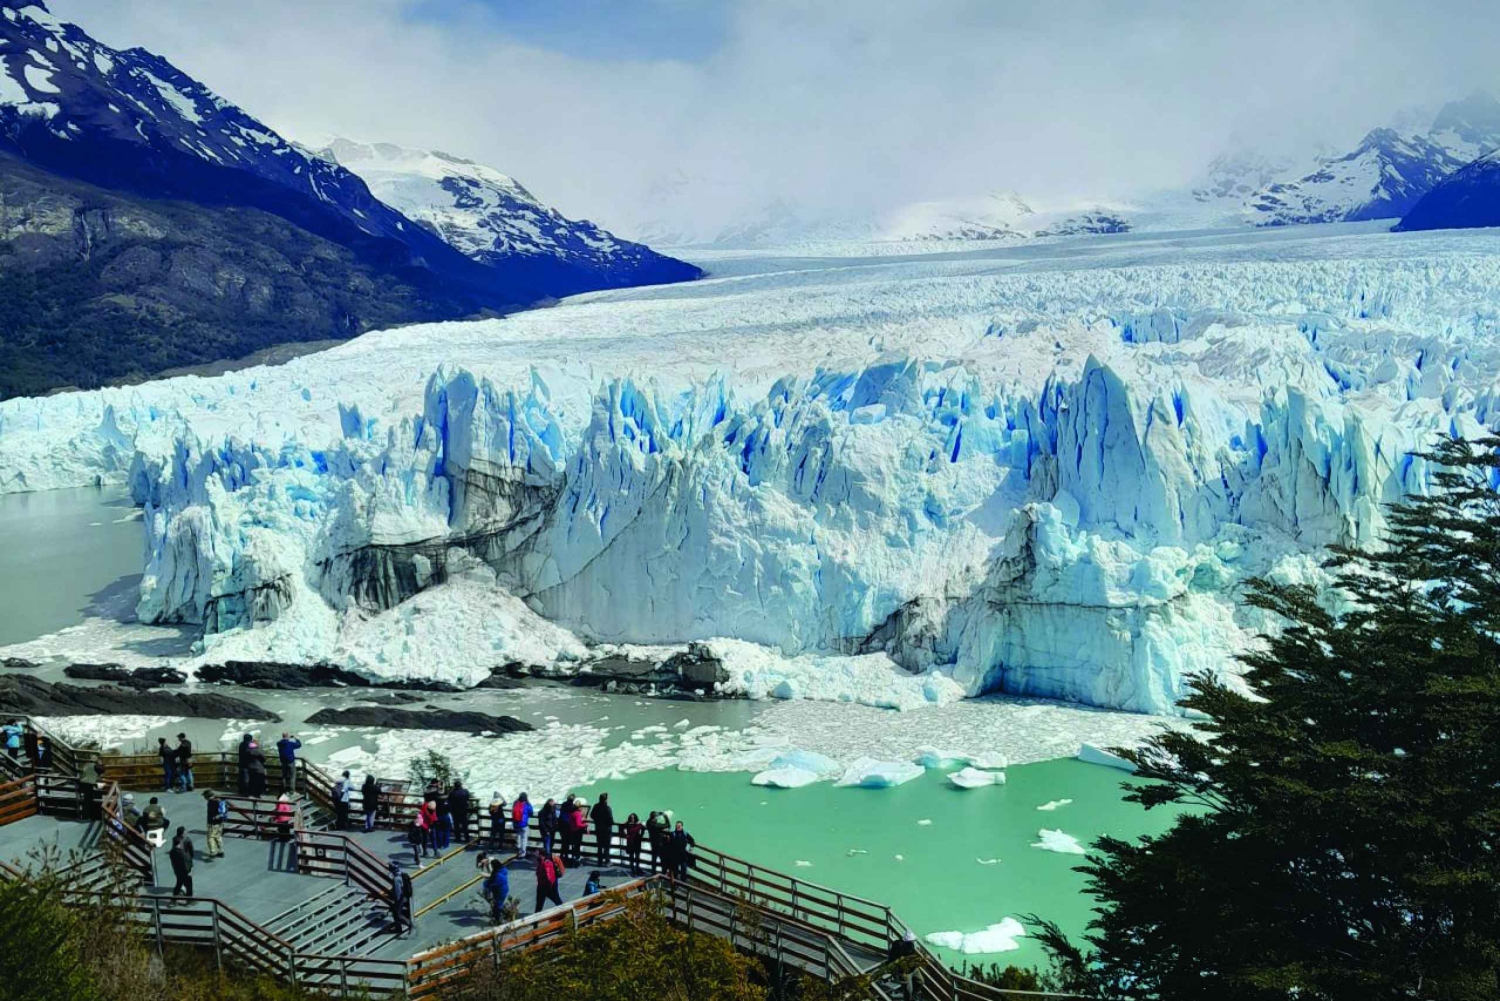 El Calafate, Perito Moreno Glacier classic tour with guide